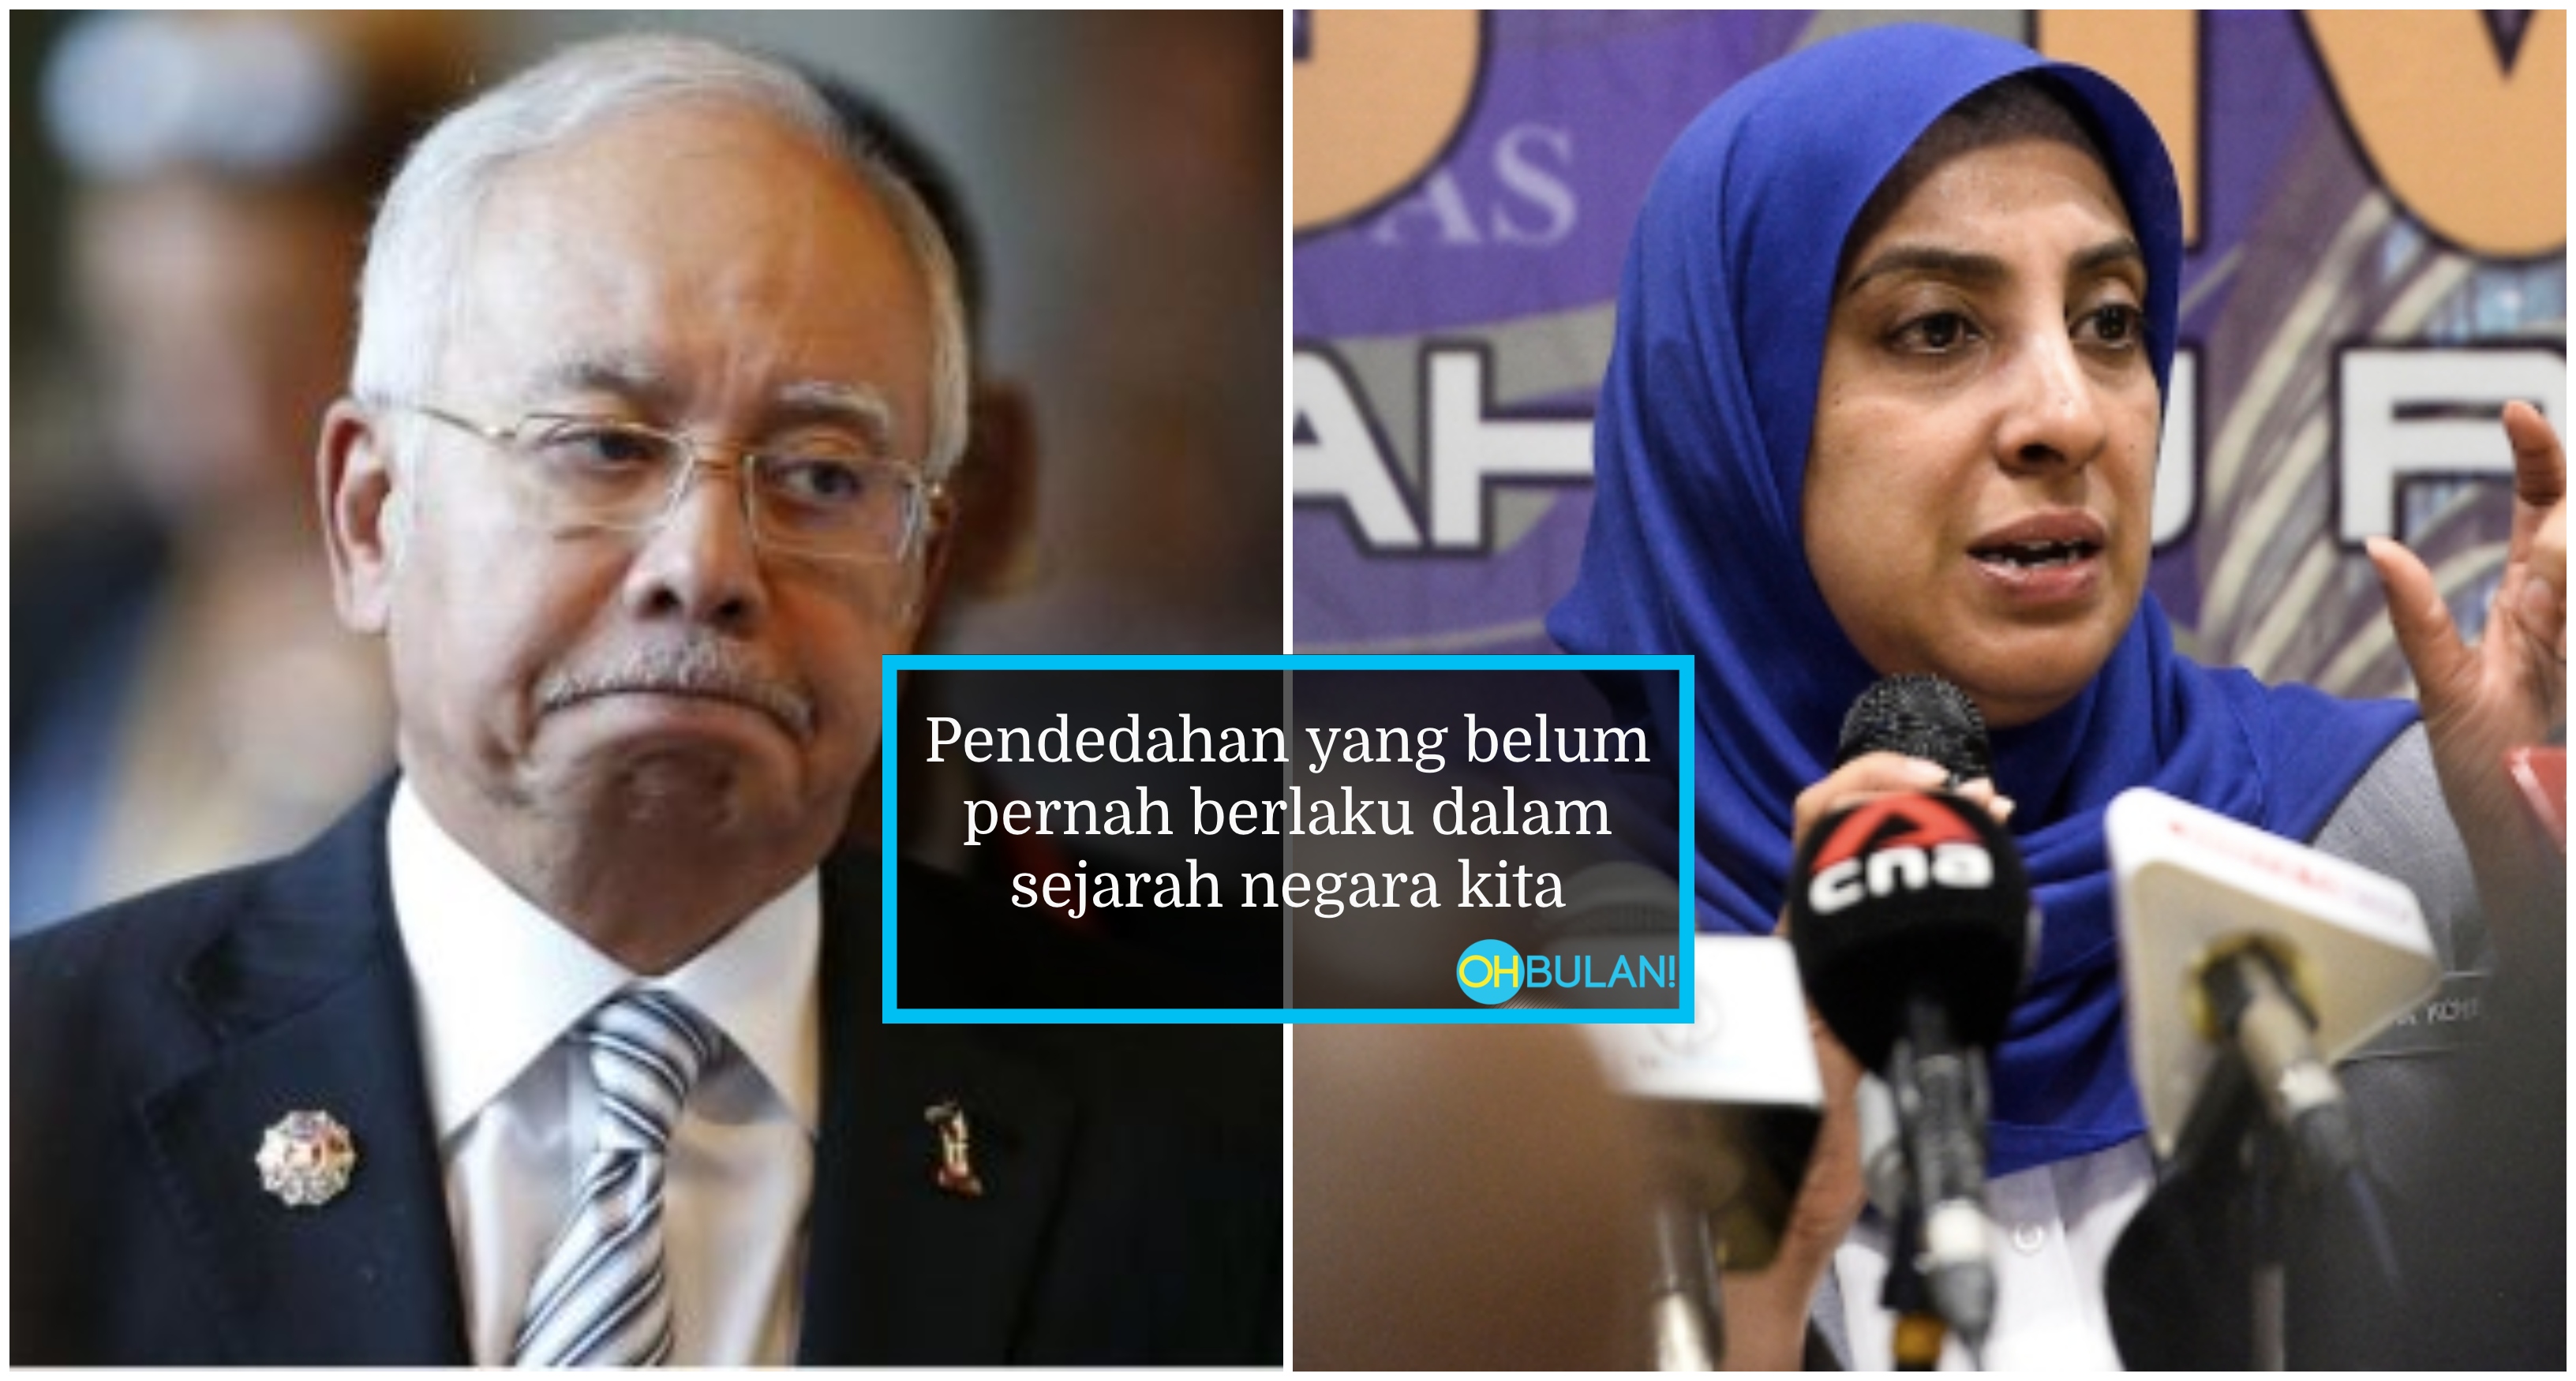 [VIDEO] Rakaman Kontroversi Najib Razak Didedahkan SPRM